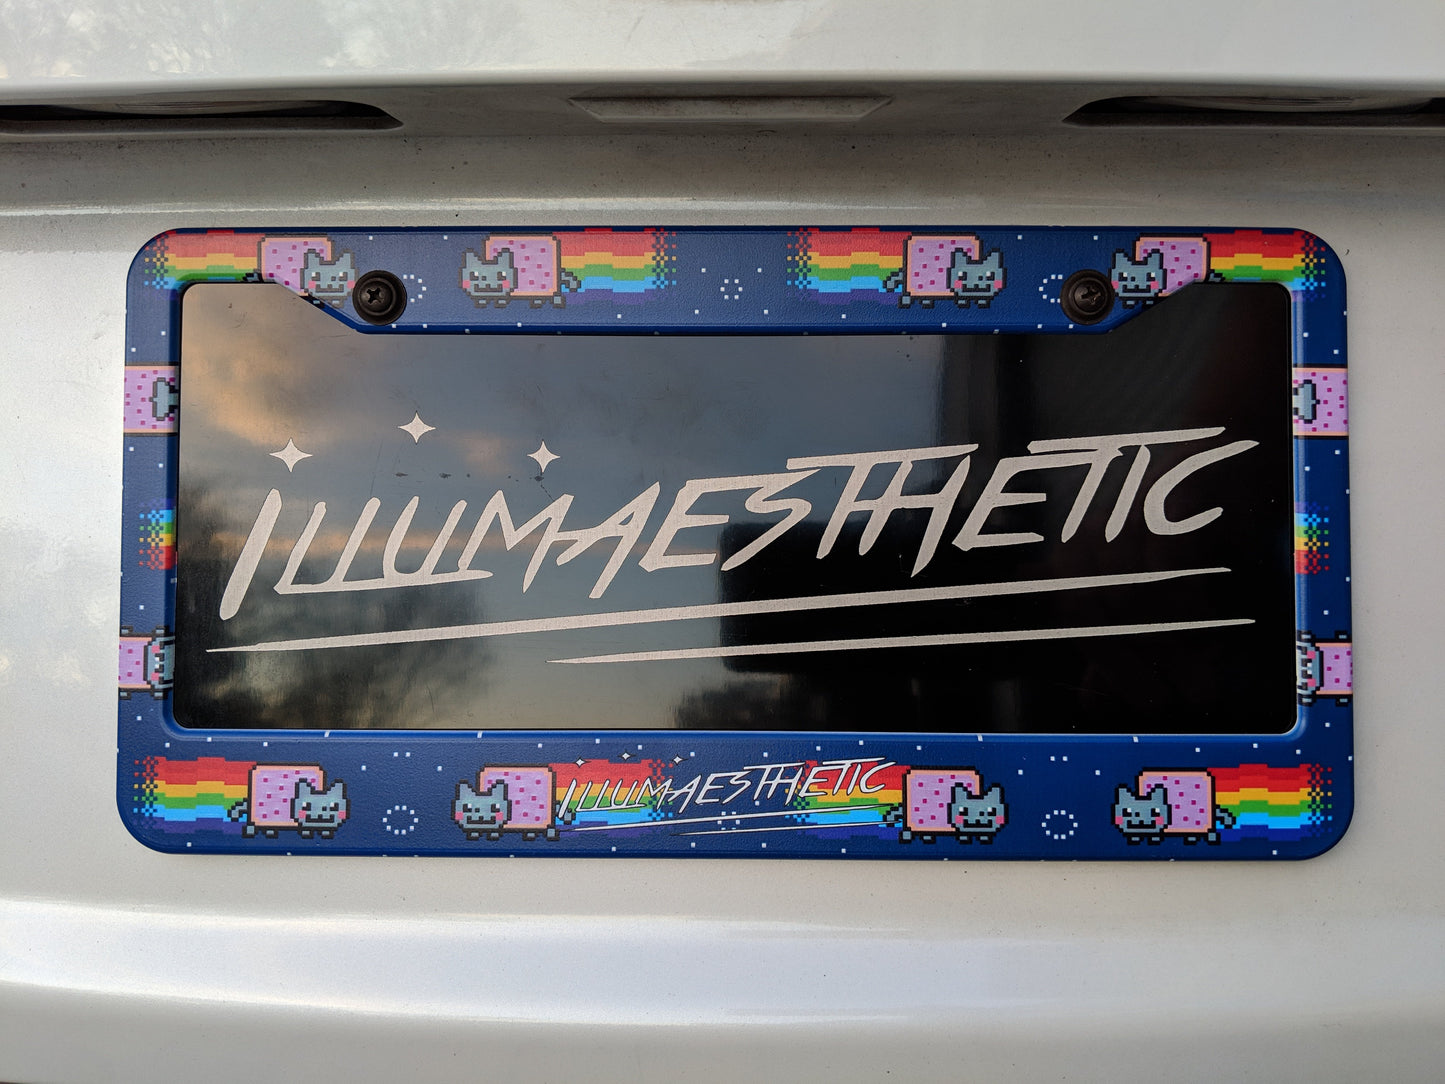 Illumaesthetic - Meme Plate Frames